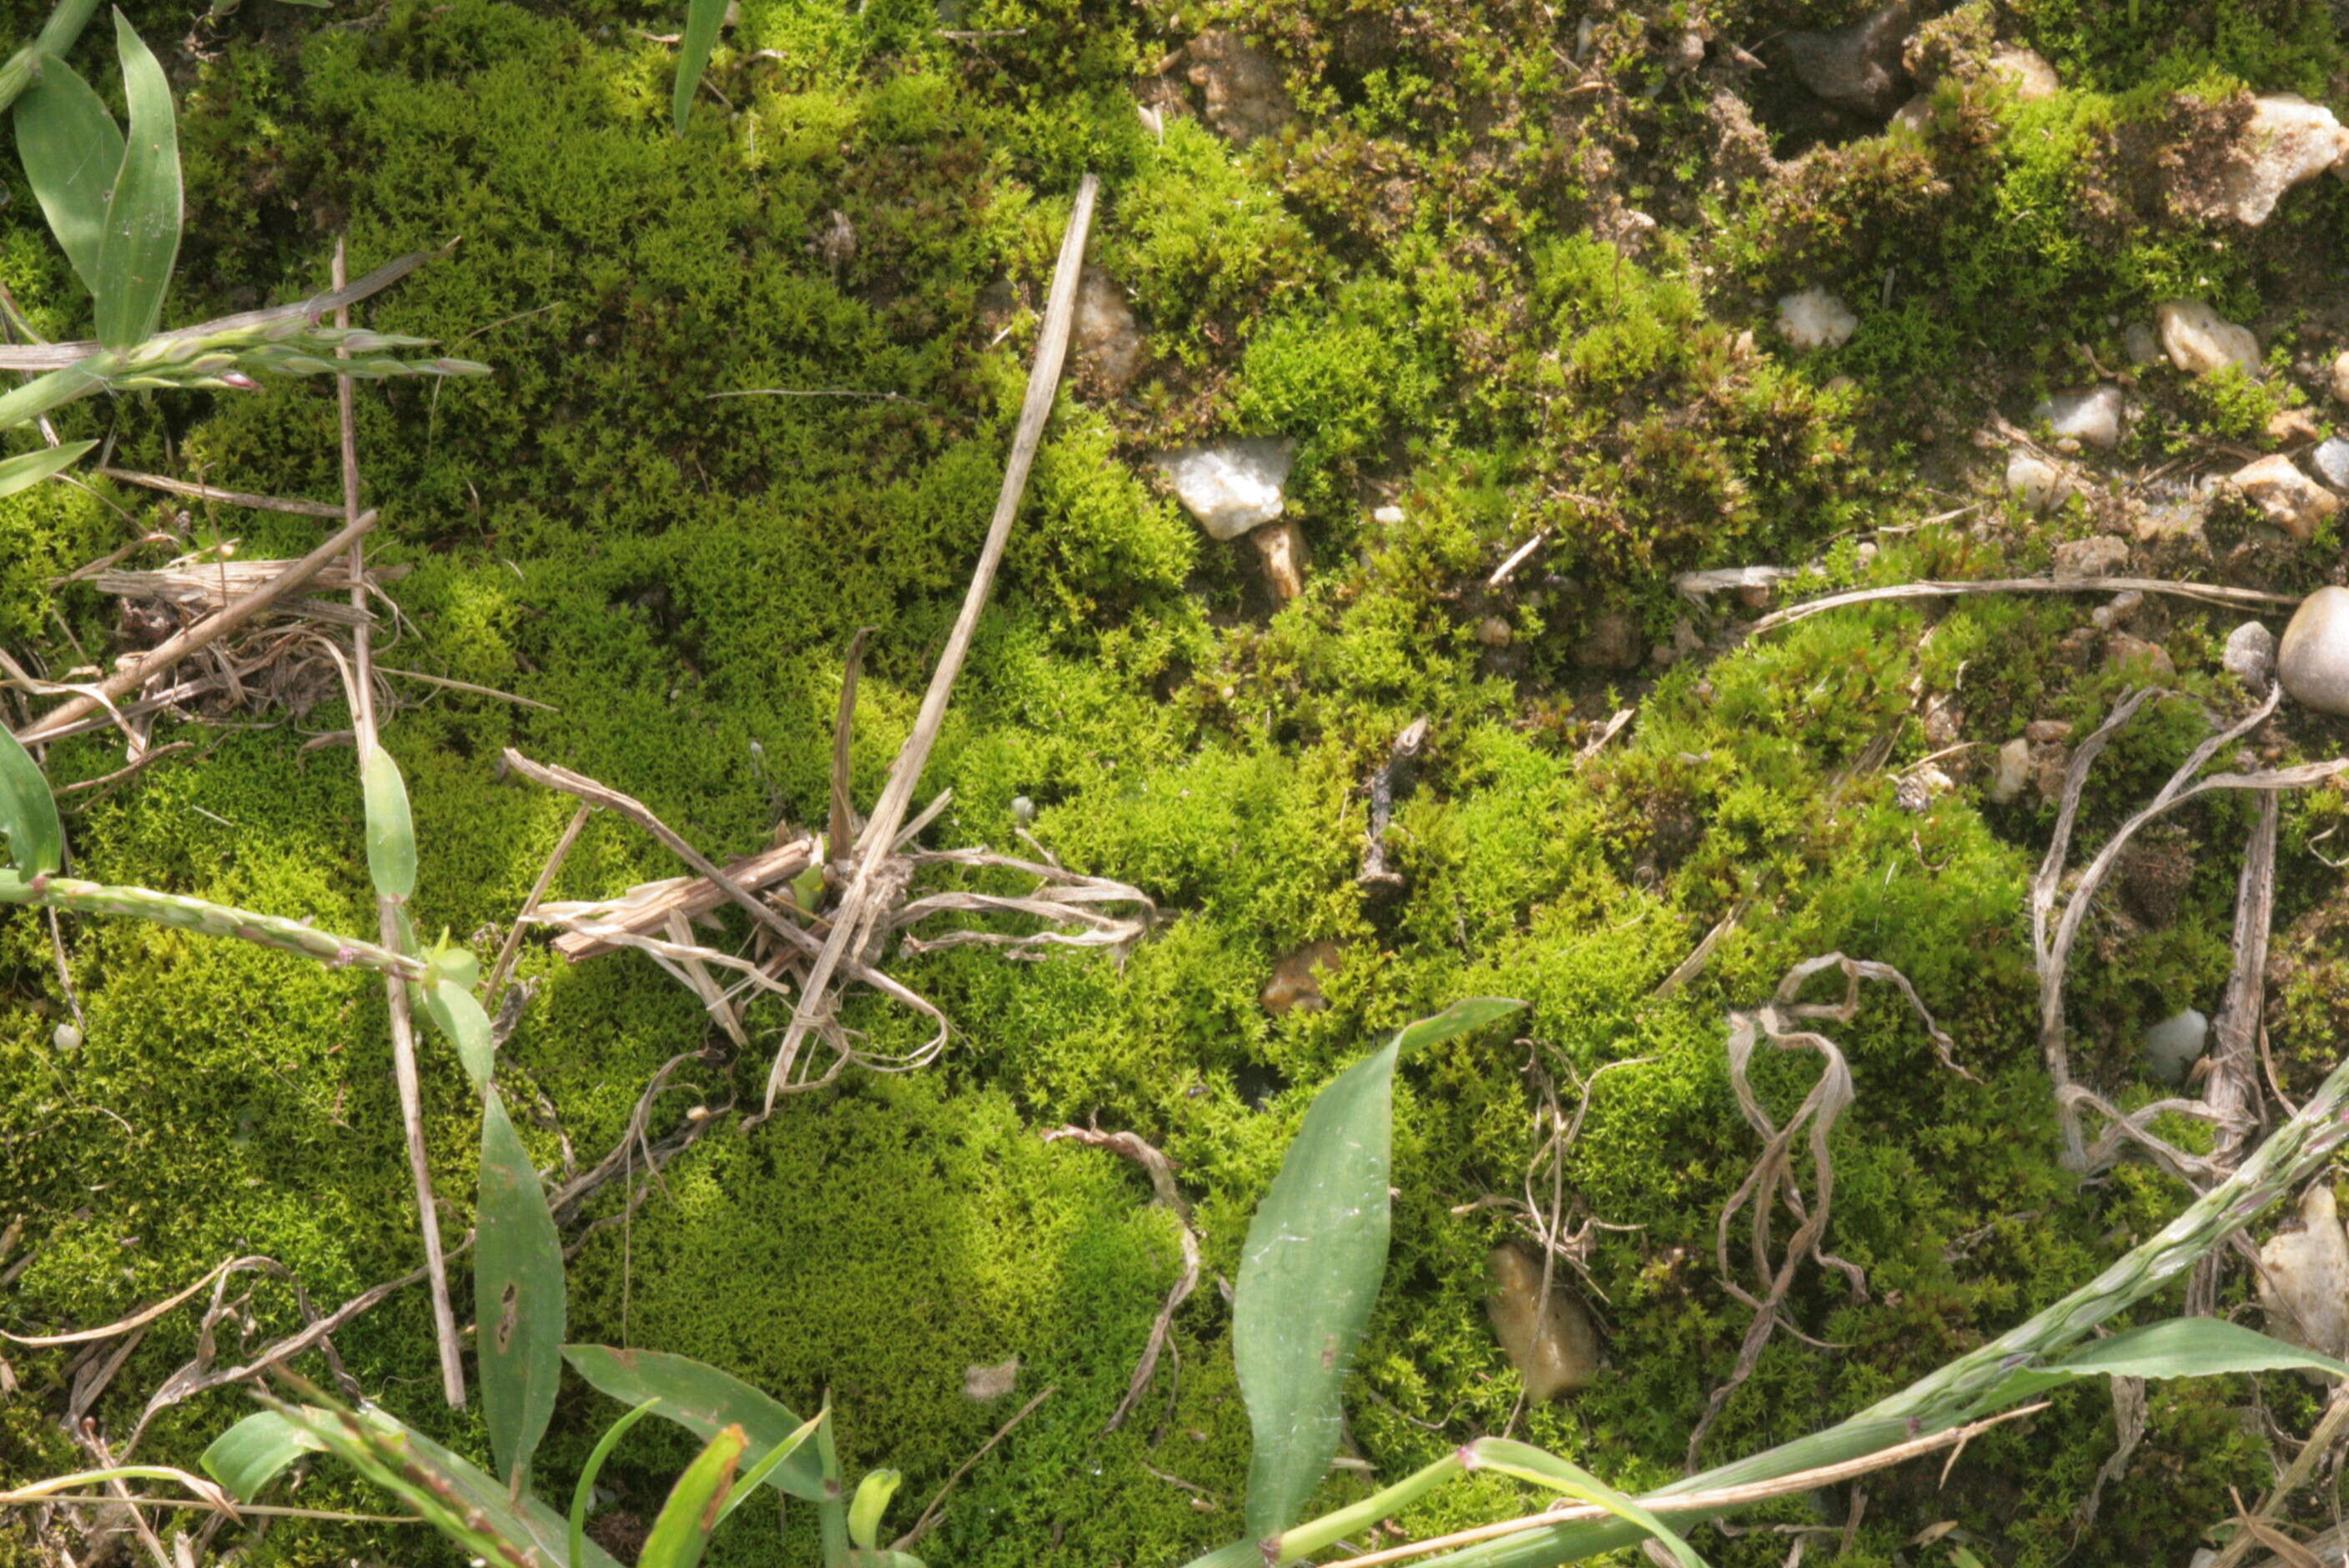 Image of pseudocrossidium moss